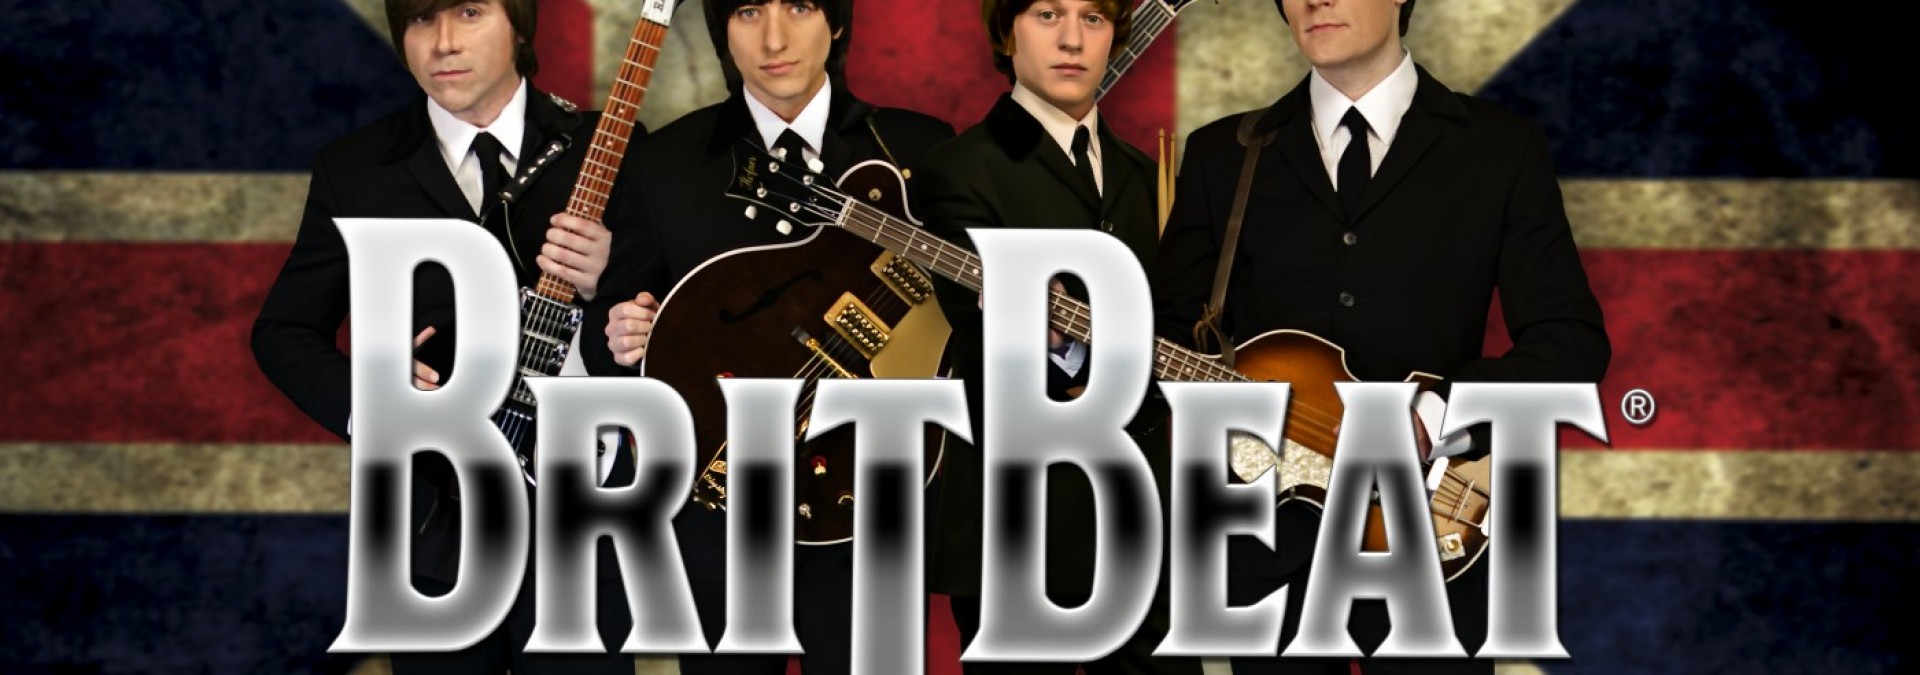 britbeat 6